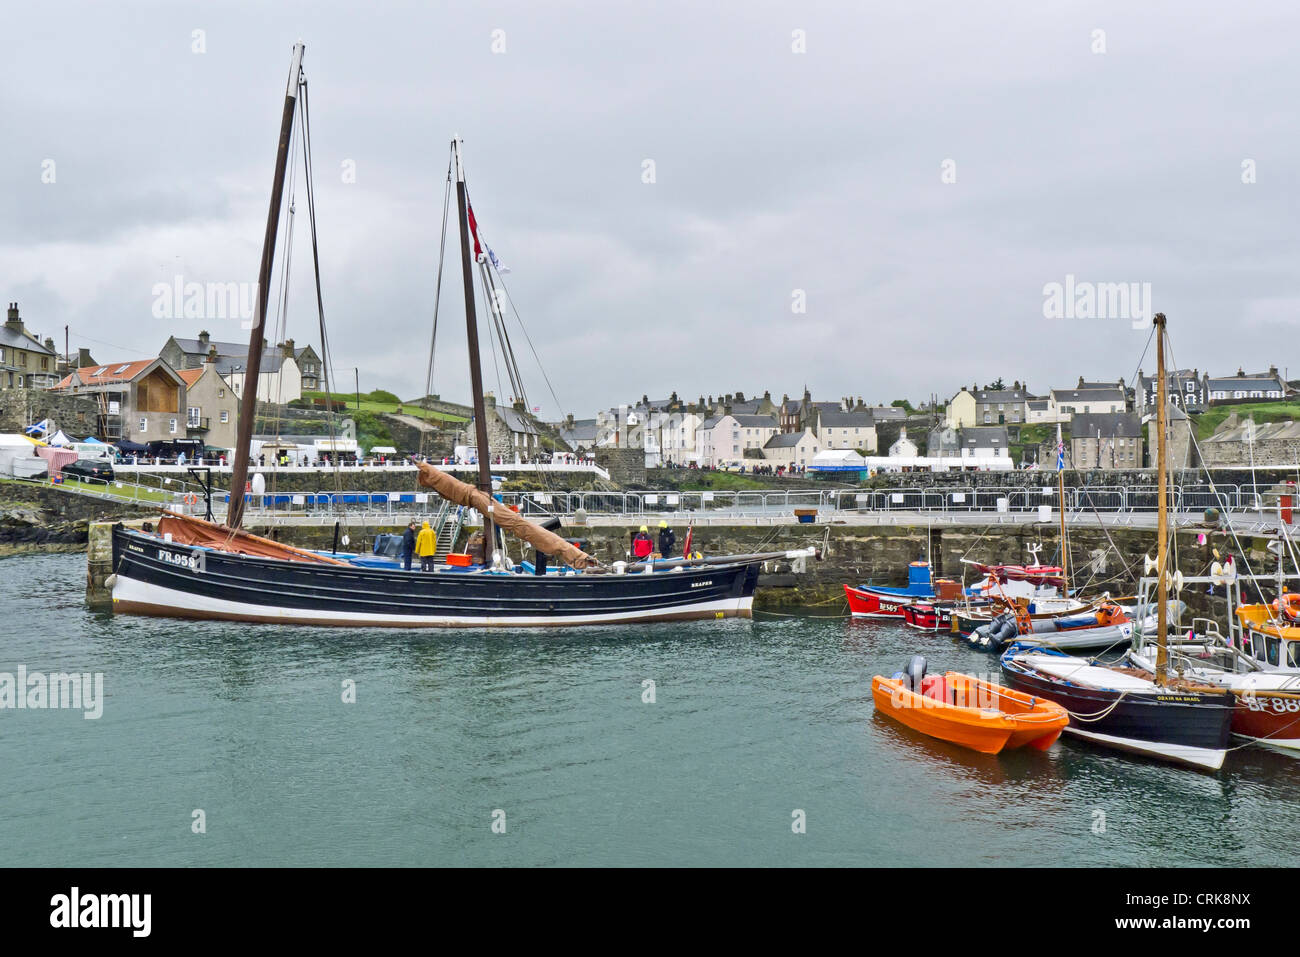 Une vue générale de Portsoy Harbour pendant le 19e Festival du bateau traditionnel écossais qui s'est tenue cette année par temps humide Banque D'Images